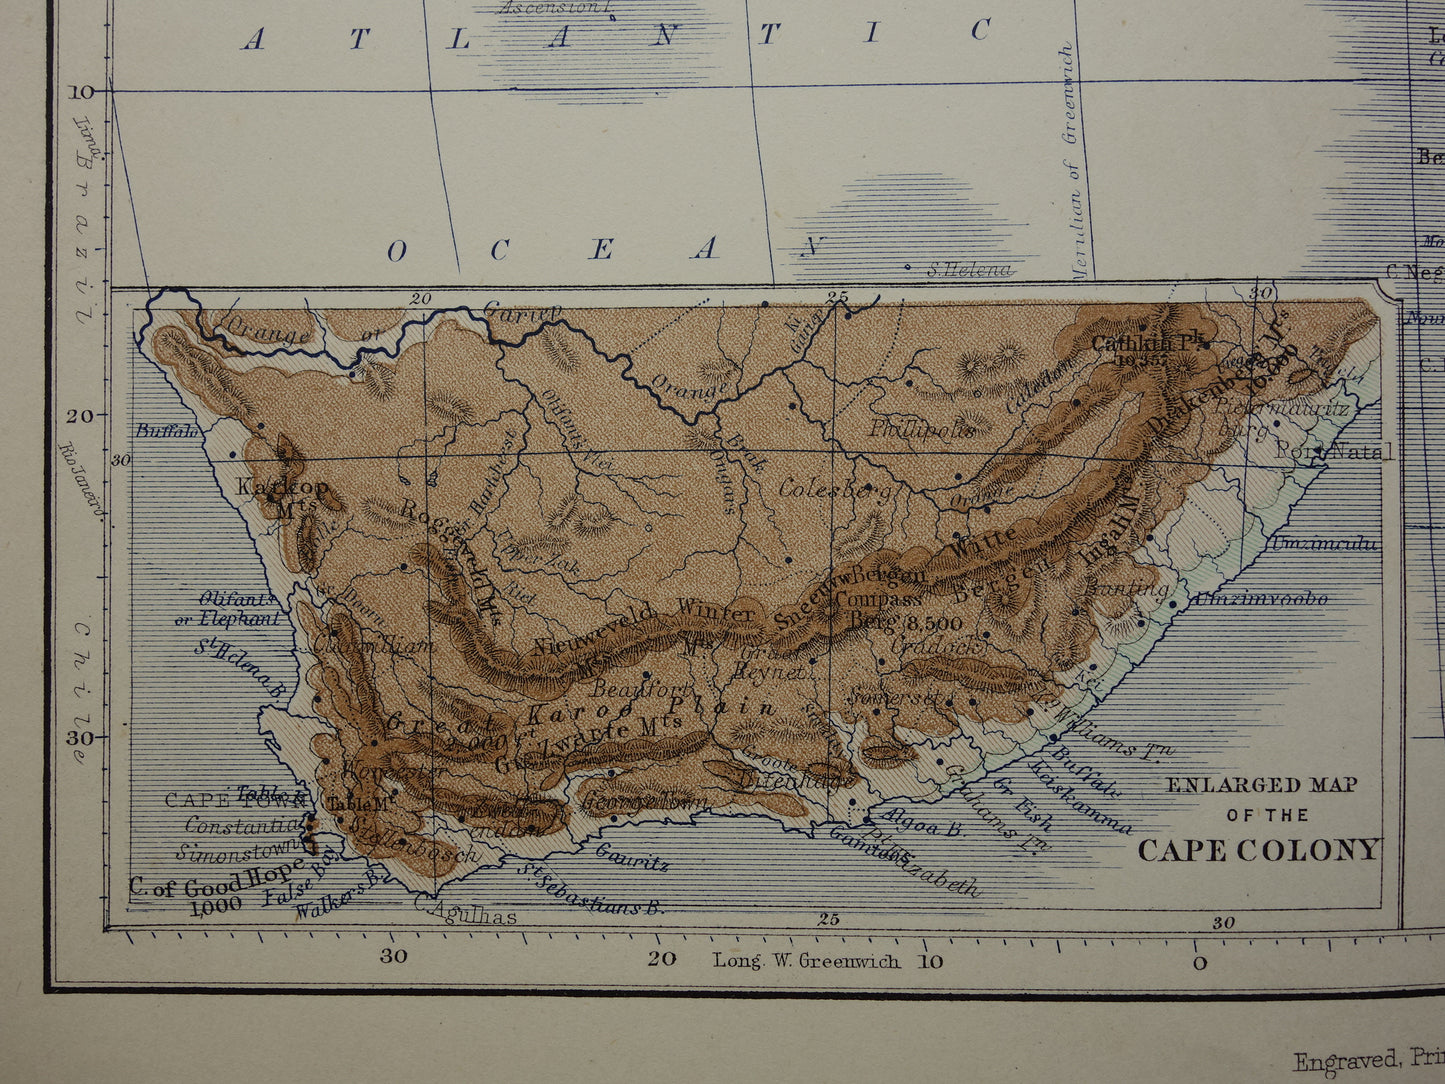 AFRIKA antieke kaart van Afrika 140+ jaar oude landkaart van continent uit 1879 - originele vintage hoogtekaart